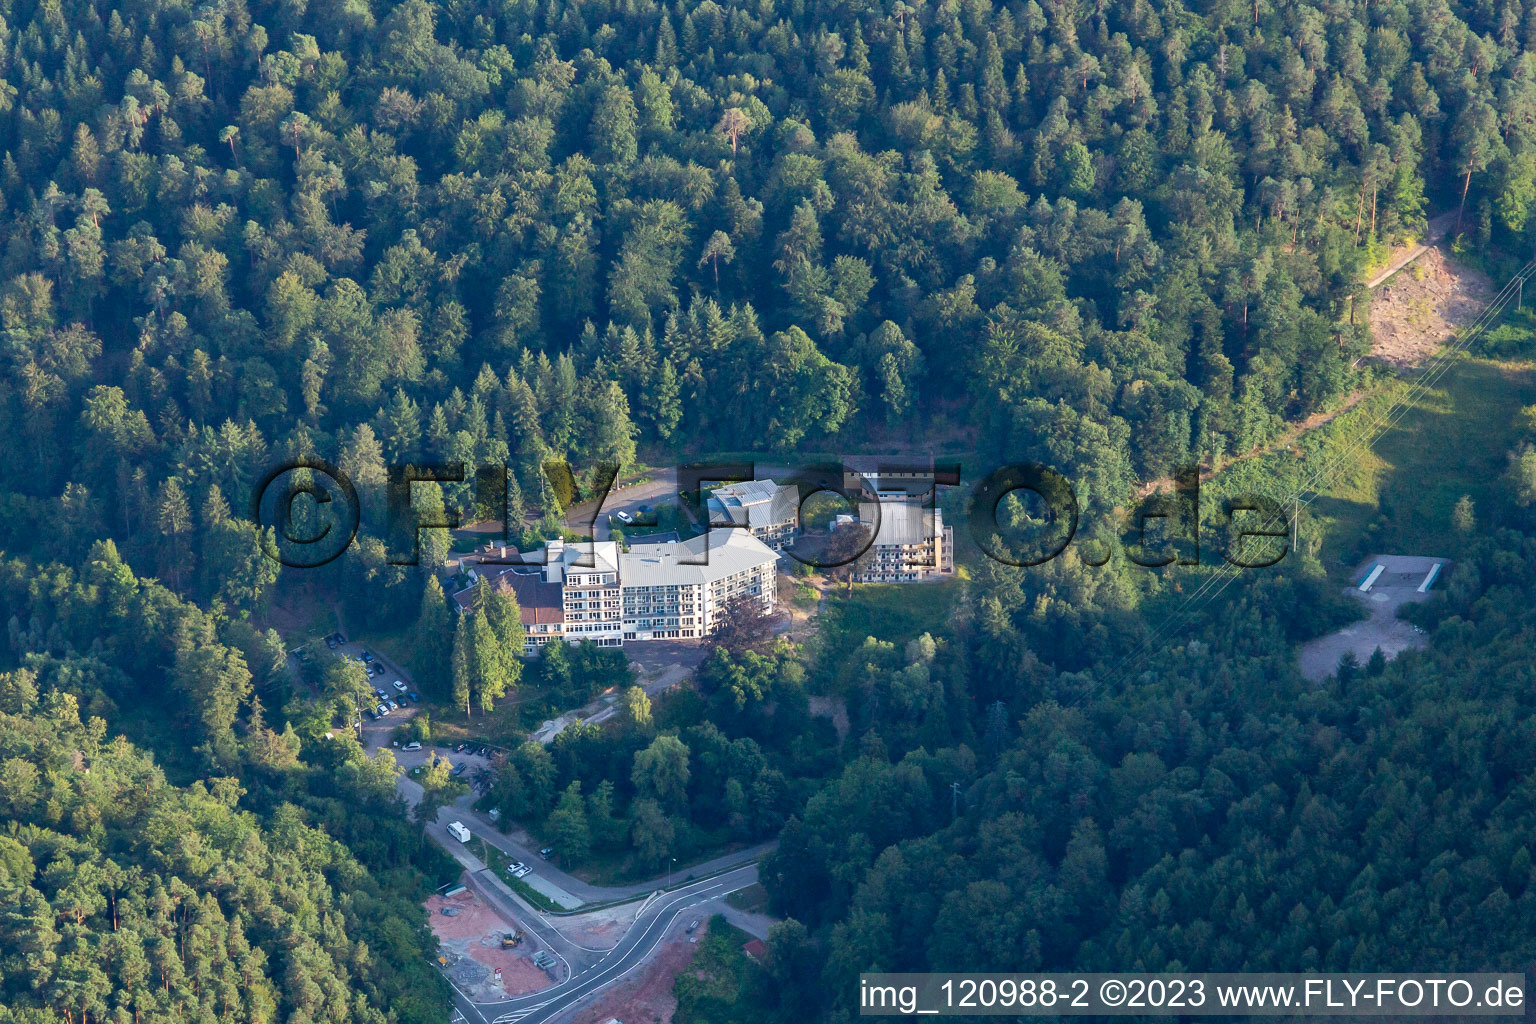 Photographie aérienne de Clinique Celenus Park à Bad Bergzabern dans le département Rhénanie-Palatinat, Allemagne